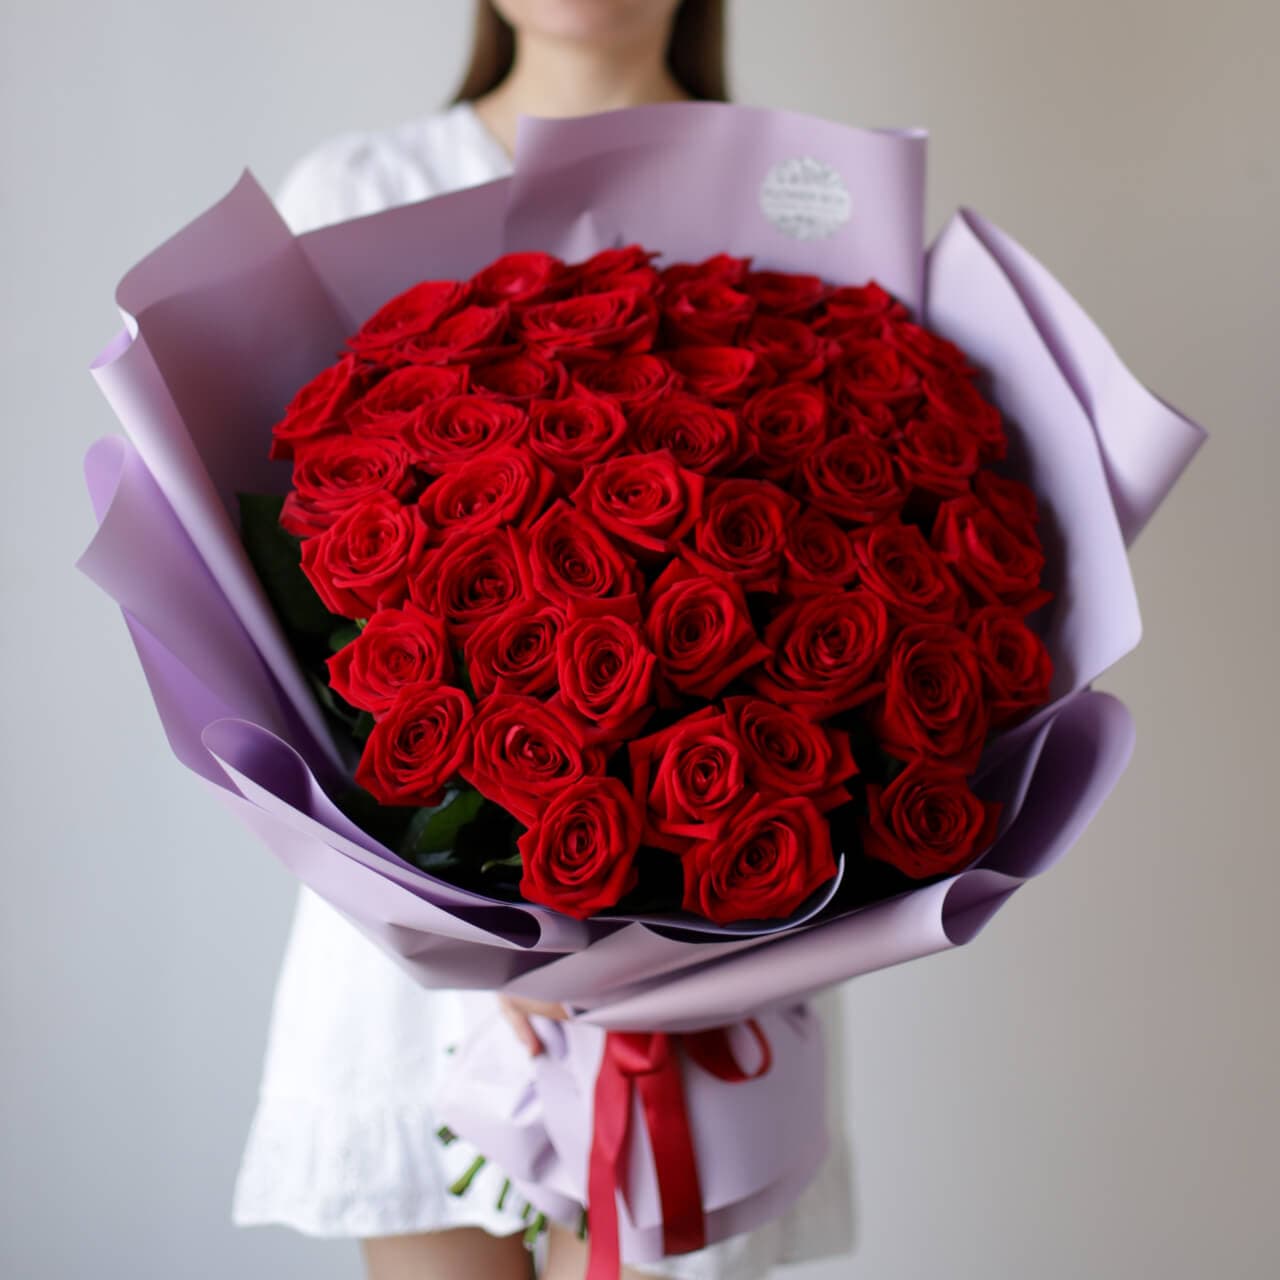 Розы красные в лавандовом оформлении (Россия, 51 шт) №1110 - Фото 1